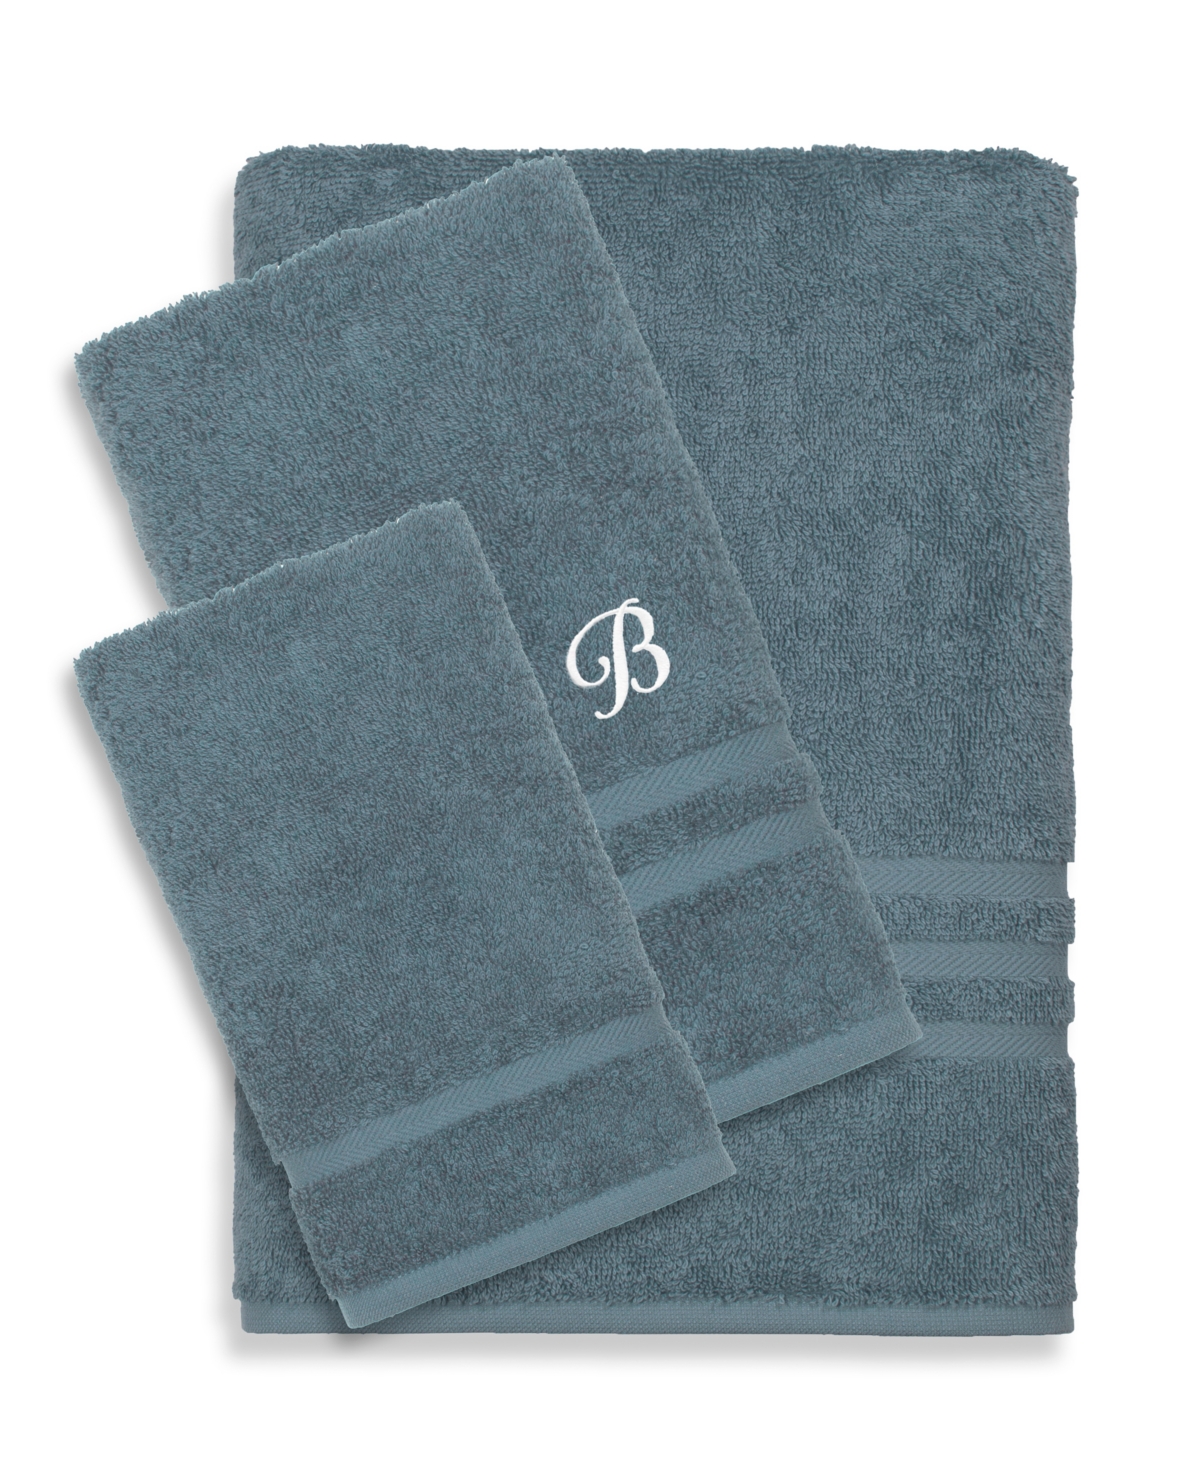 Linum Home Textiles Turkish Cotton Personalized Denzi Towel Set, 3 Piece In Blue